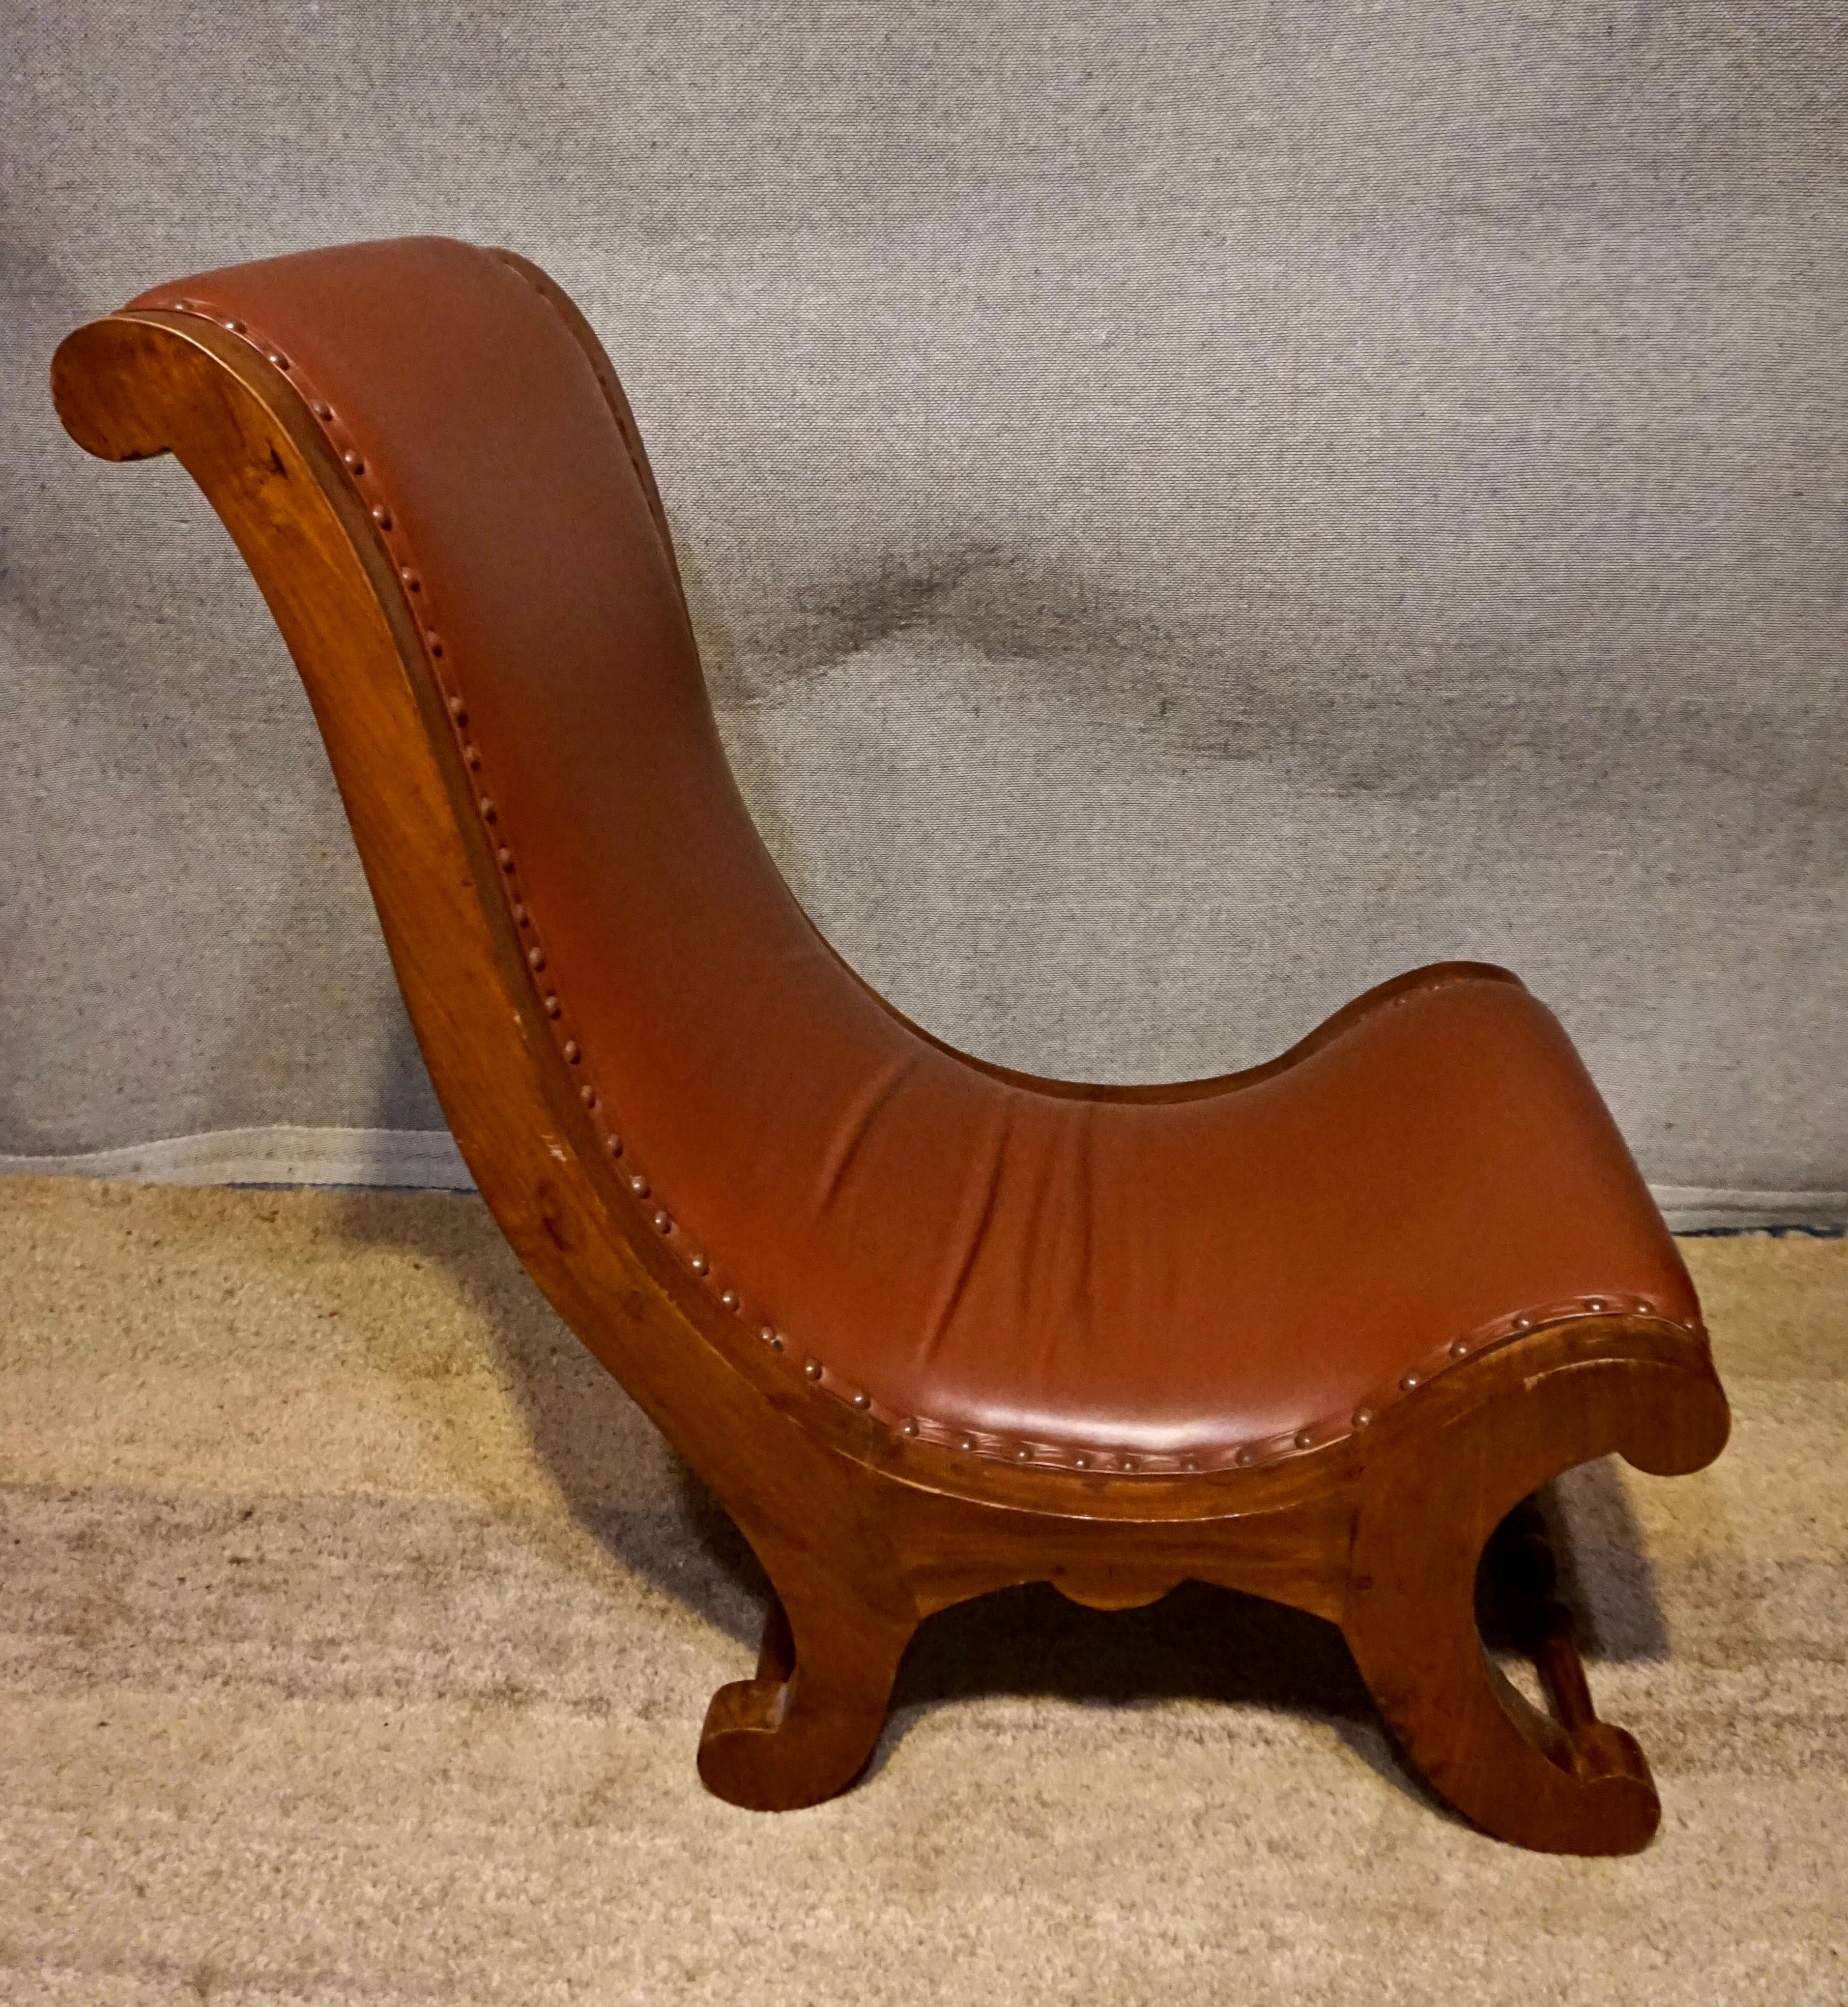 Circa 1920's

Chaise pantoufle victorienne sculptée à la main, construite en bois de teck et retapissée en cuir brun.